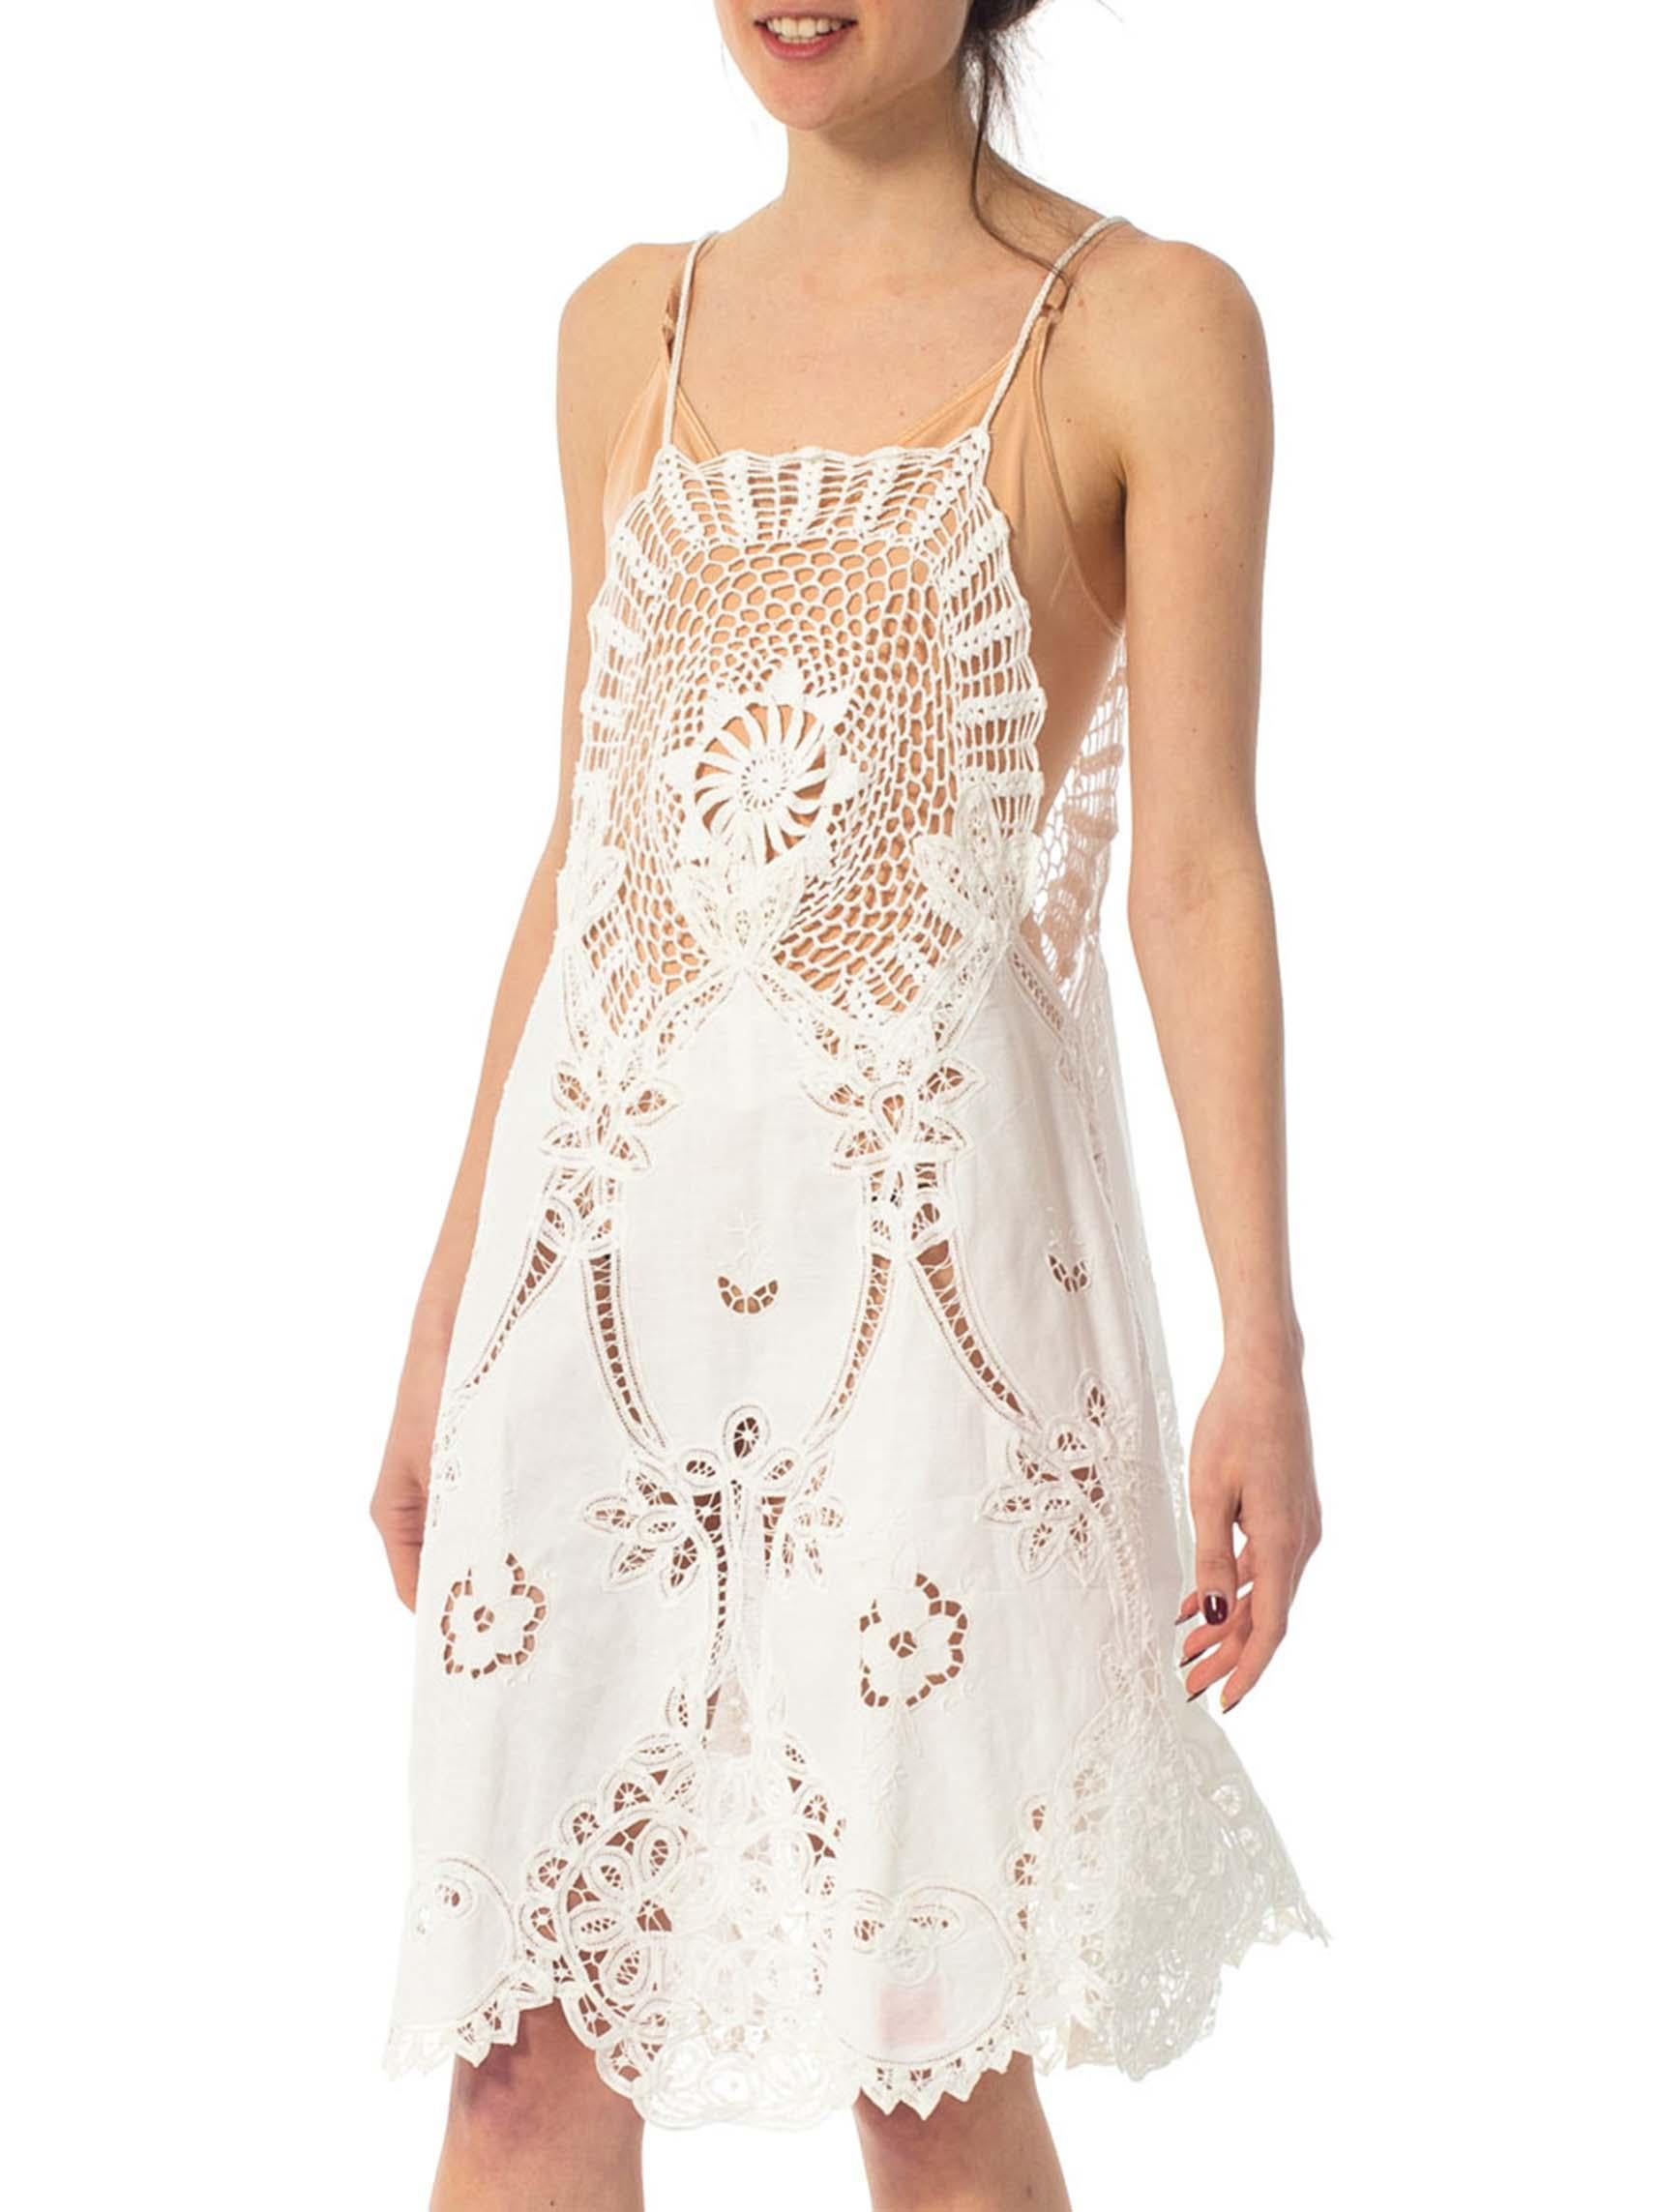 1970S White Cotton Lace Crochet Top Dress 2